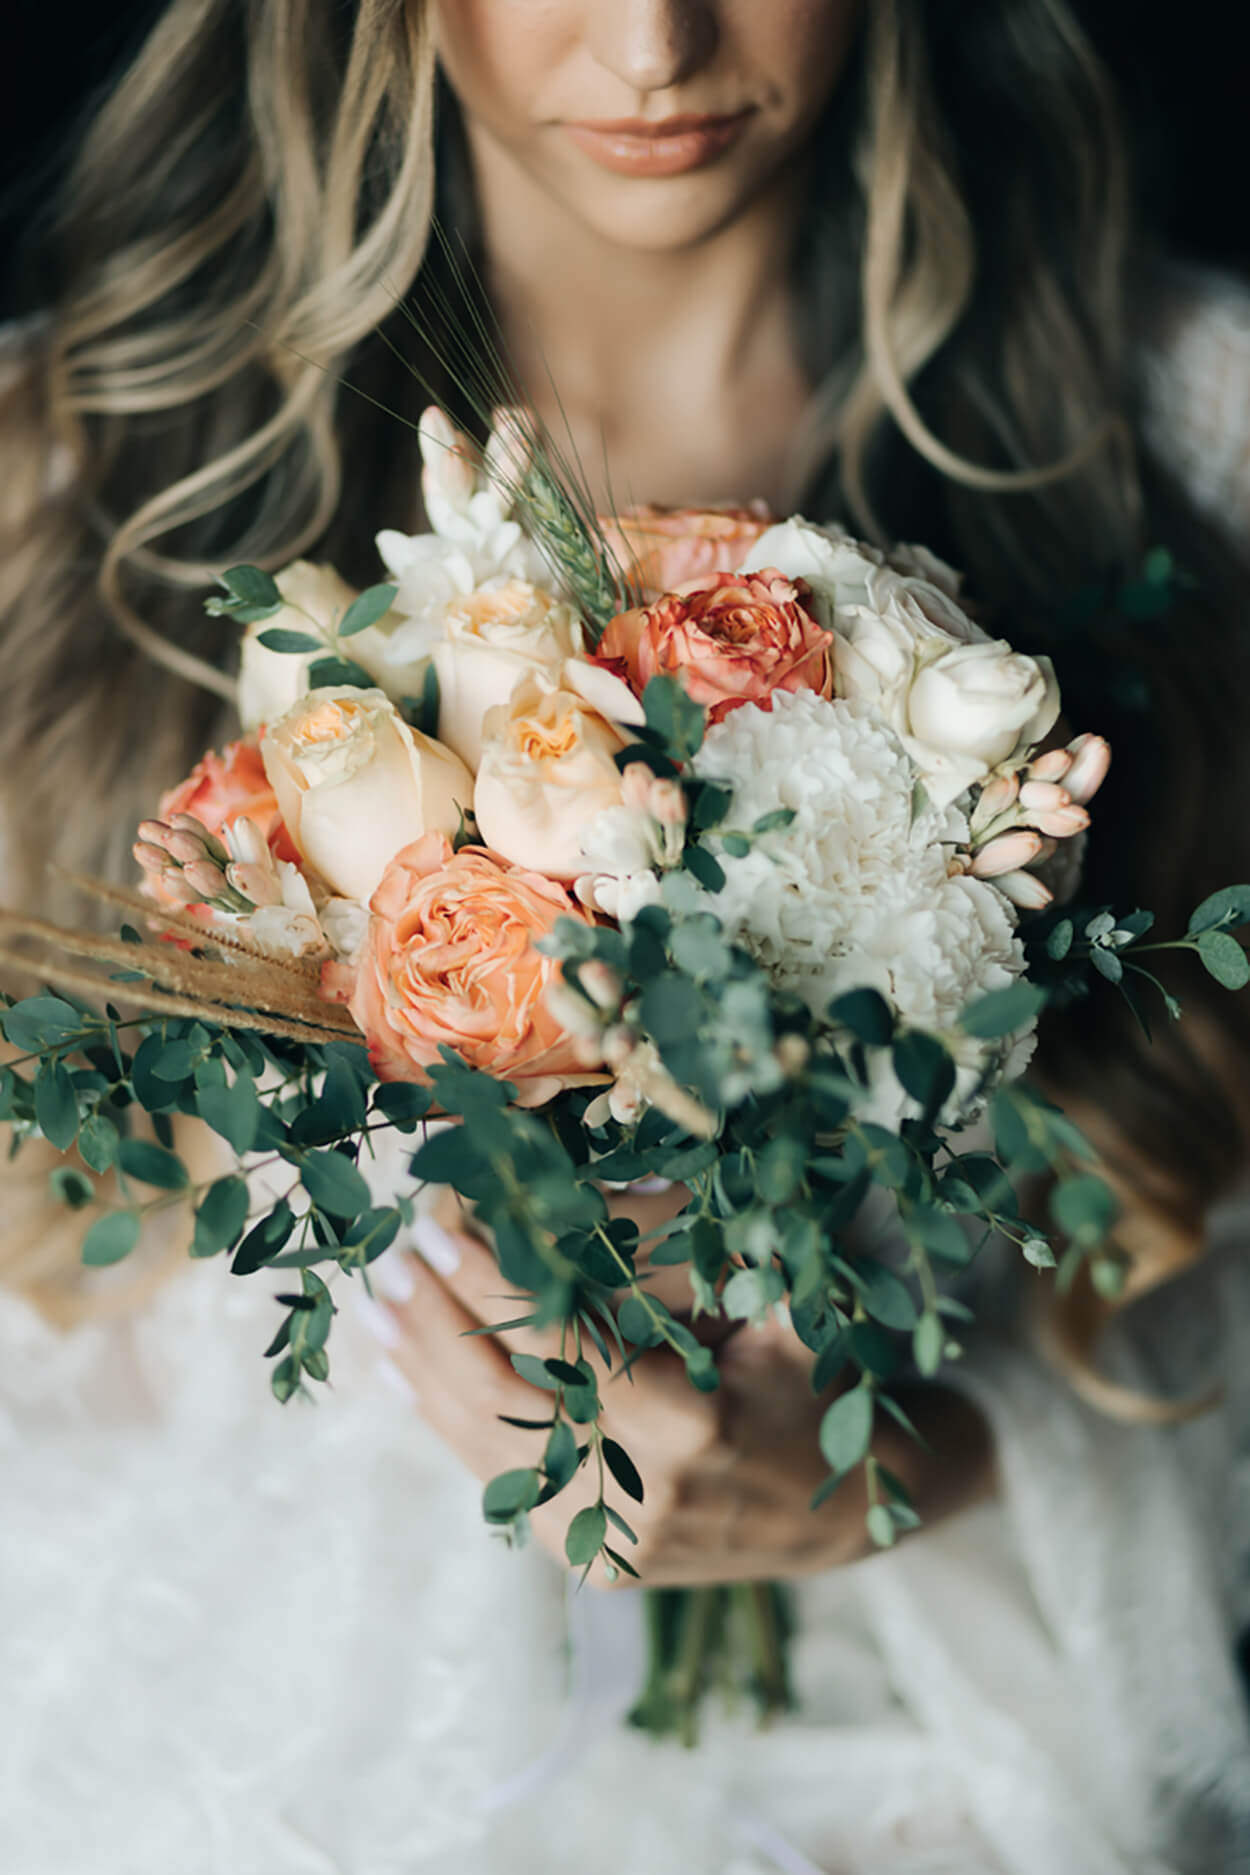 Mulher segurando buquê com rosas laranjas e amarelas e flores brancas